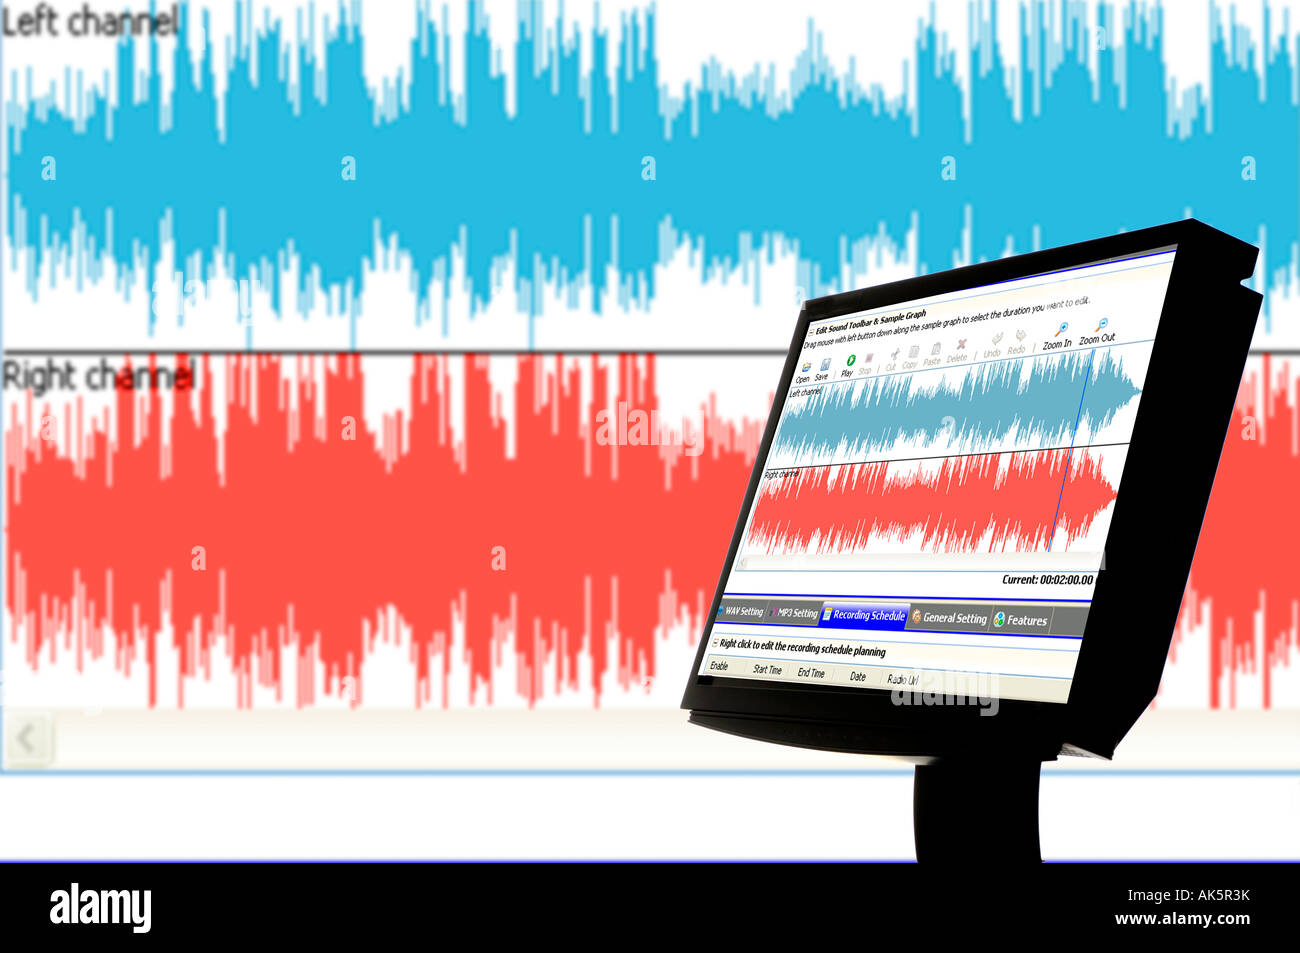 Les ondes audio sur l'écran de l'ordinateur et projetés background Banque D'Images